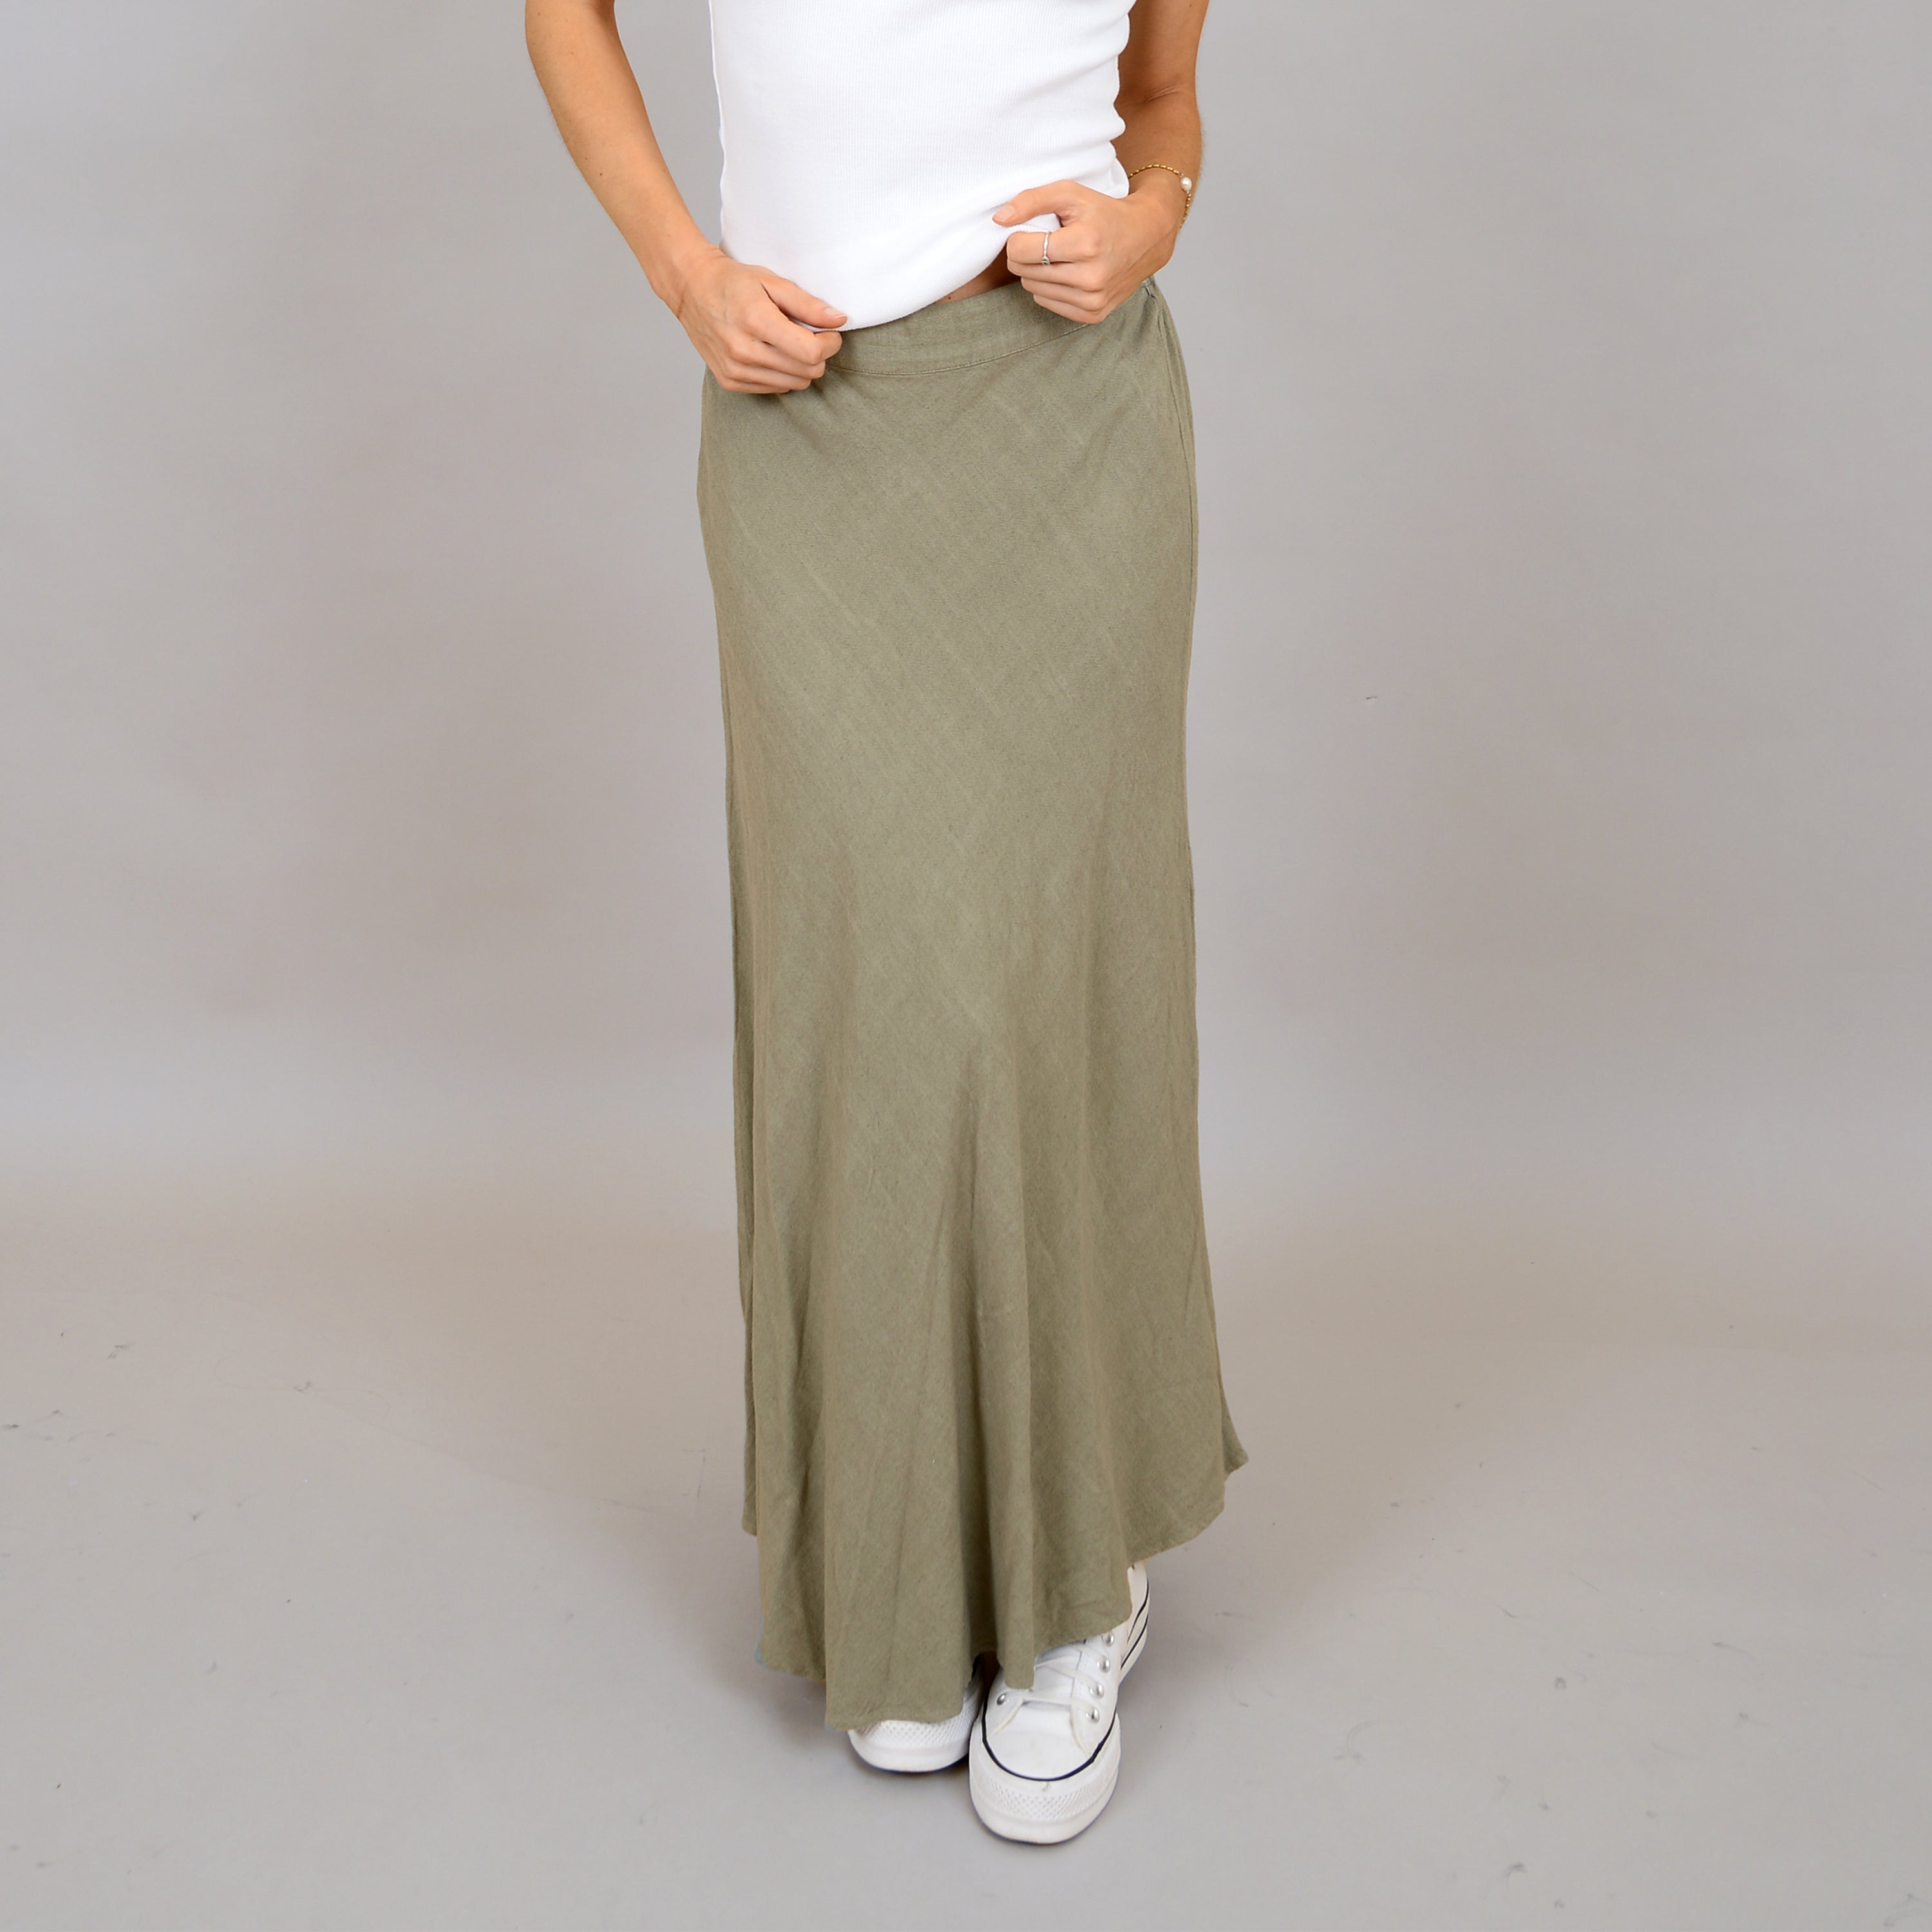 The Linen Moss Maxi Skirt